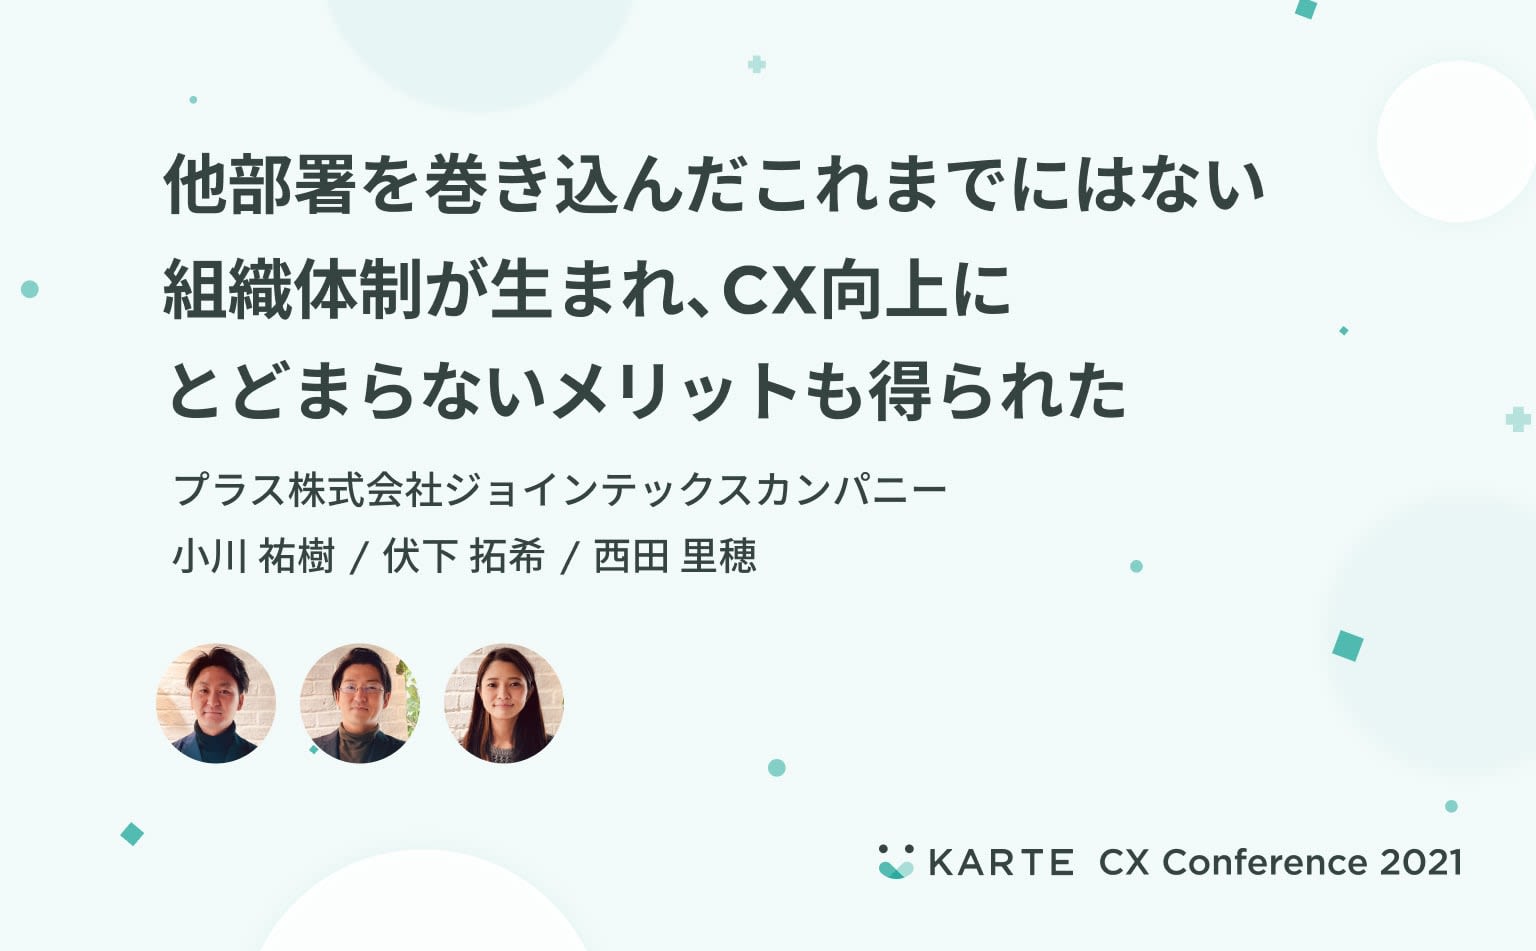 CX向上のために異なる部門が同じKPIで動く体制に。“顧客を知る” ことから始まったsmartofficeの変化